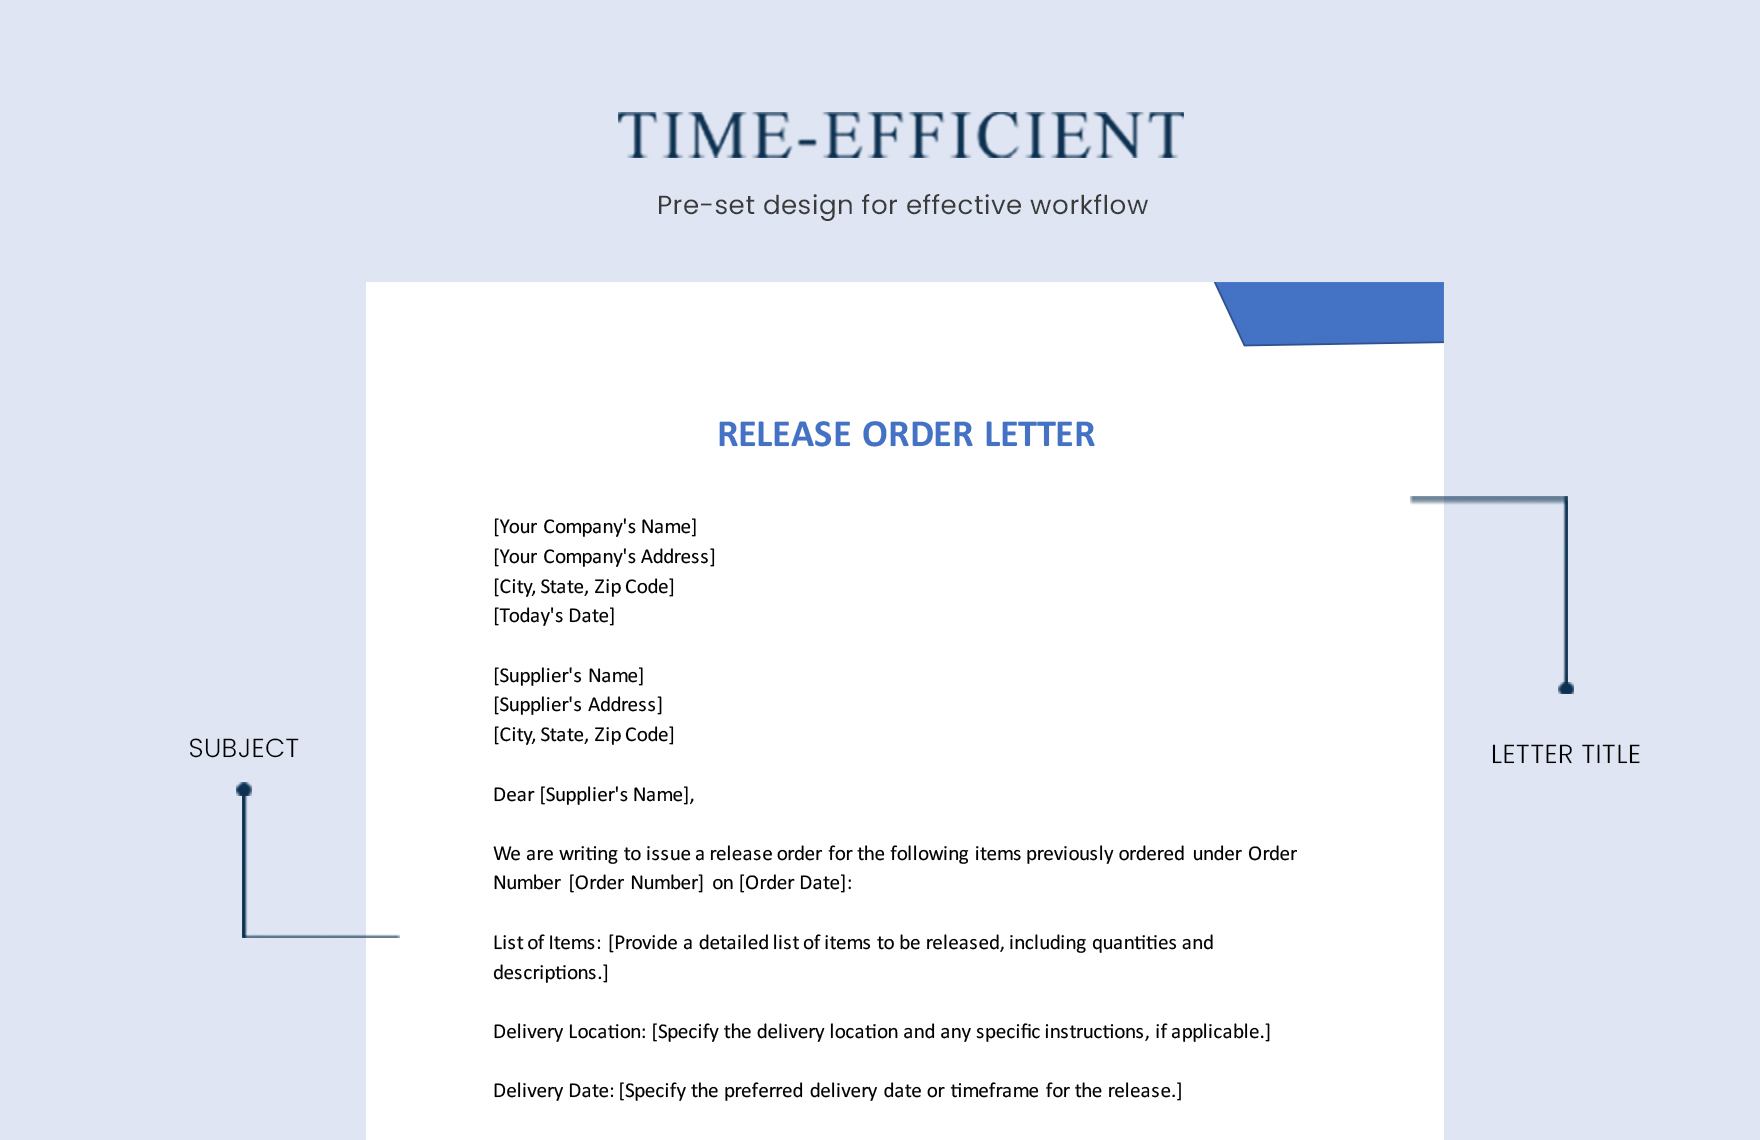 Release Order Letter